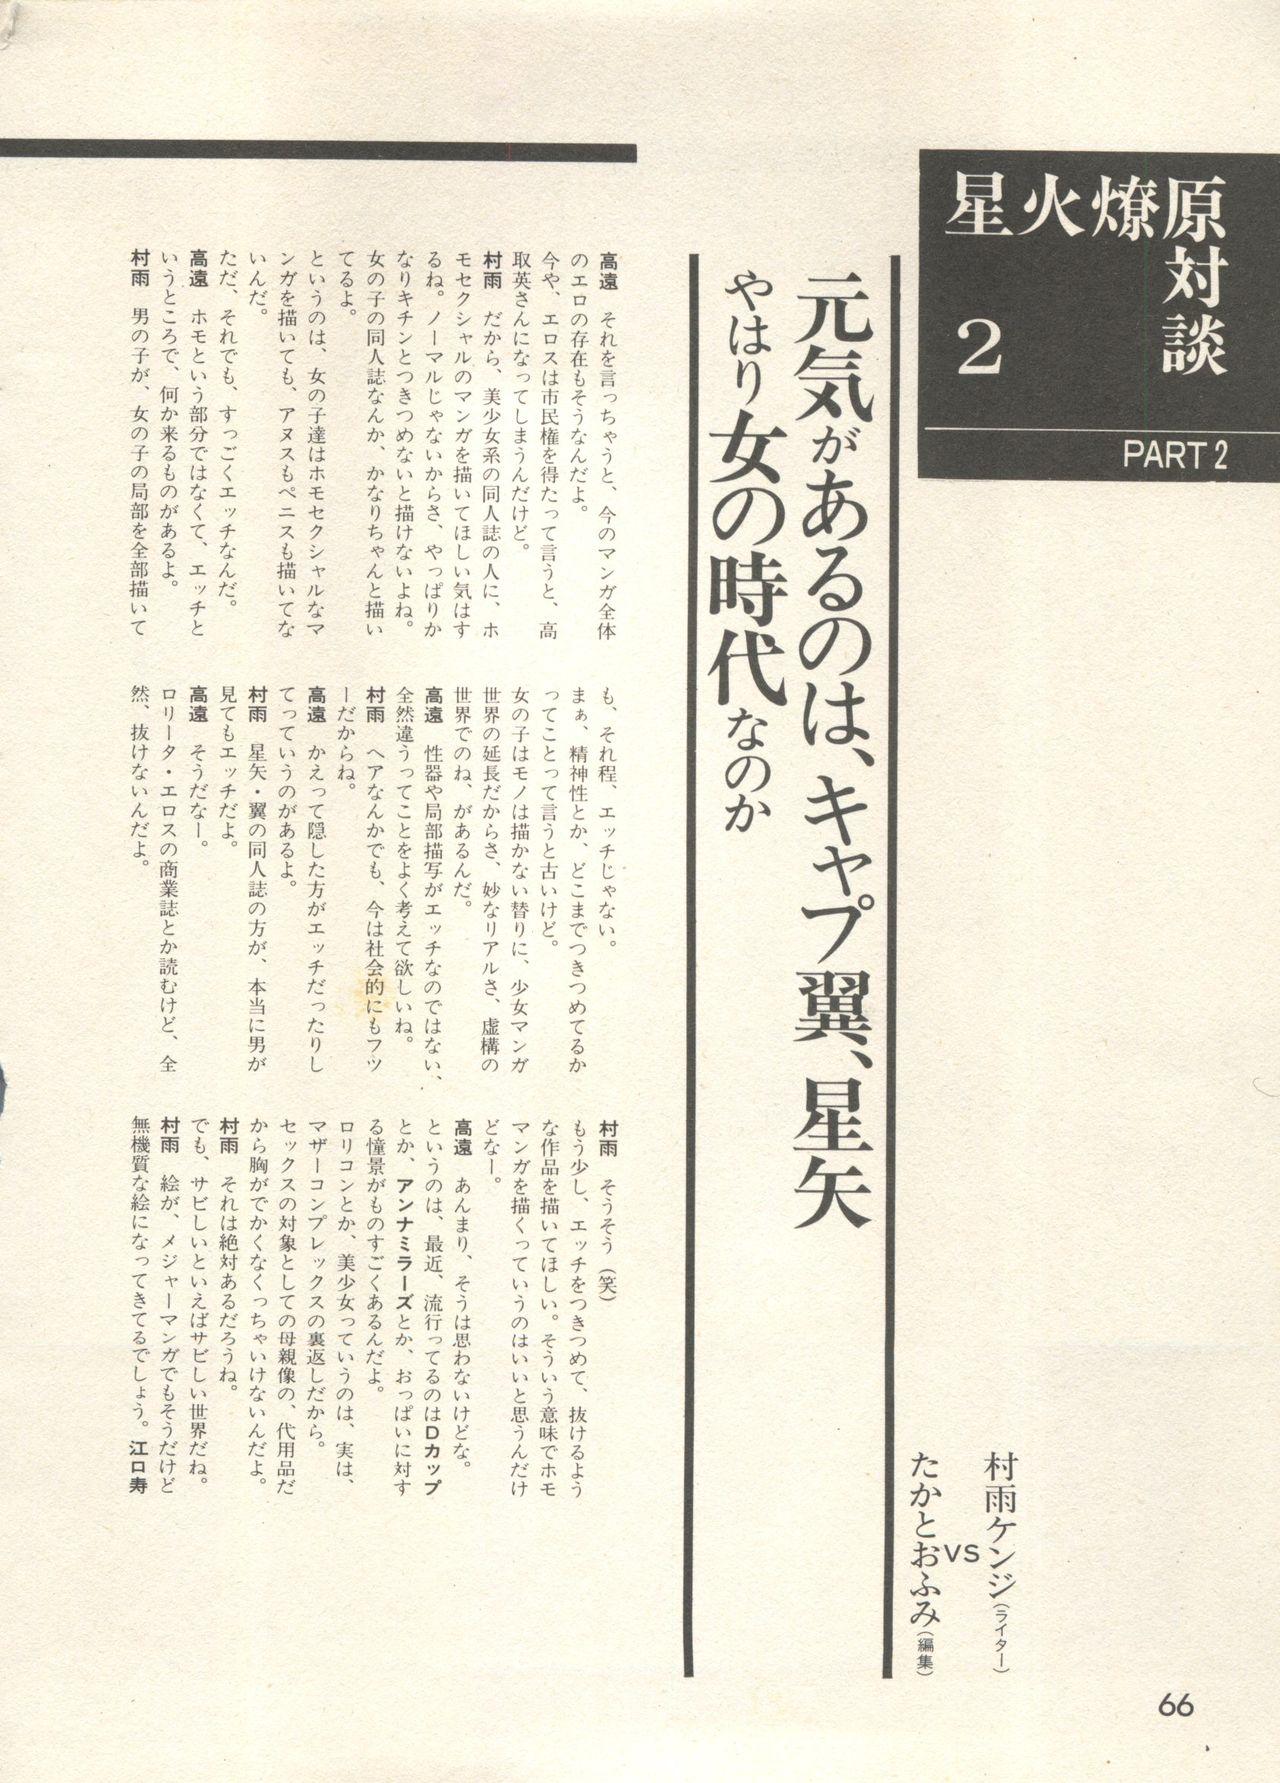 Bishoujo Shoukougun - Lolita Syndrome 7 68